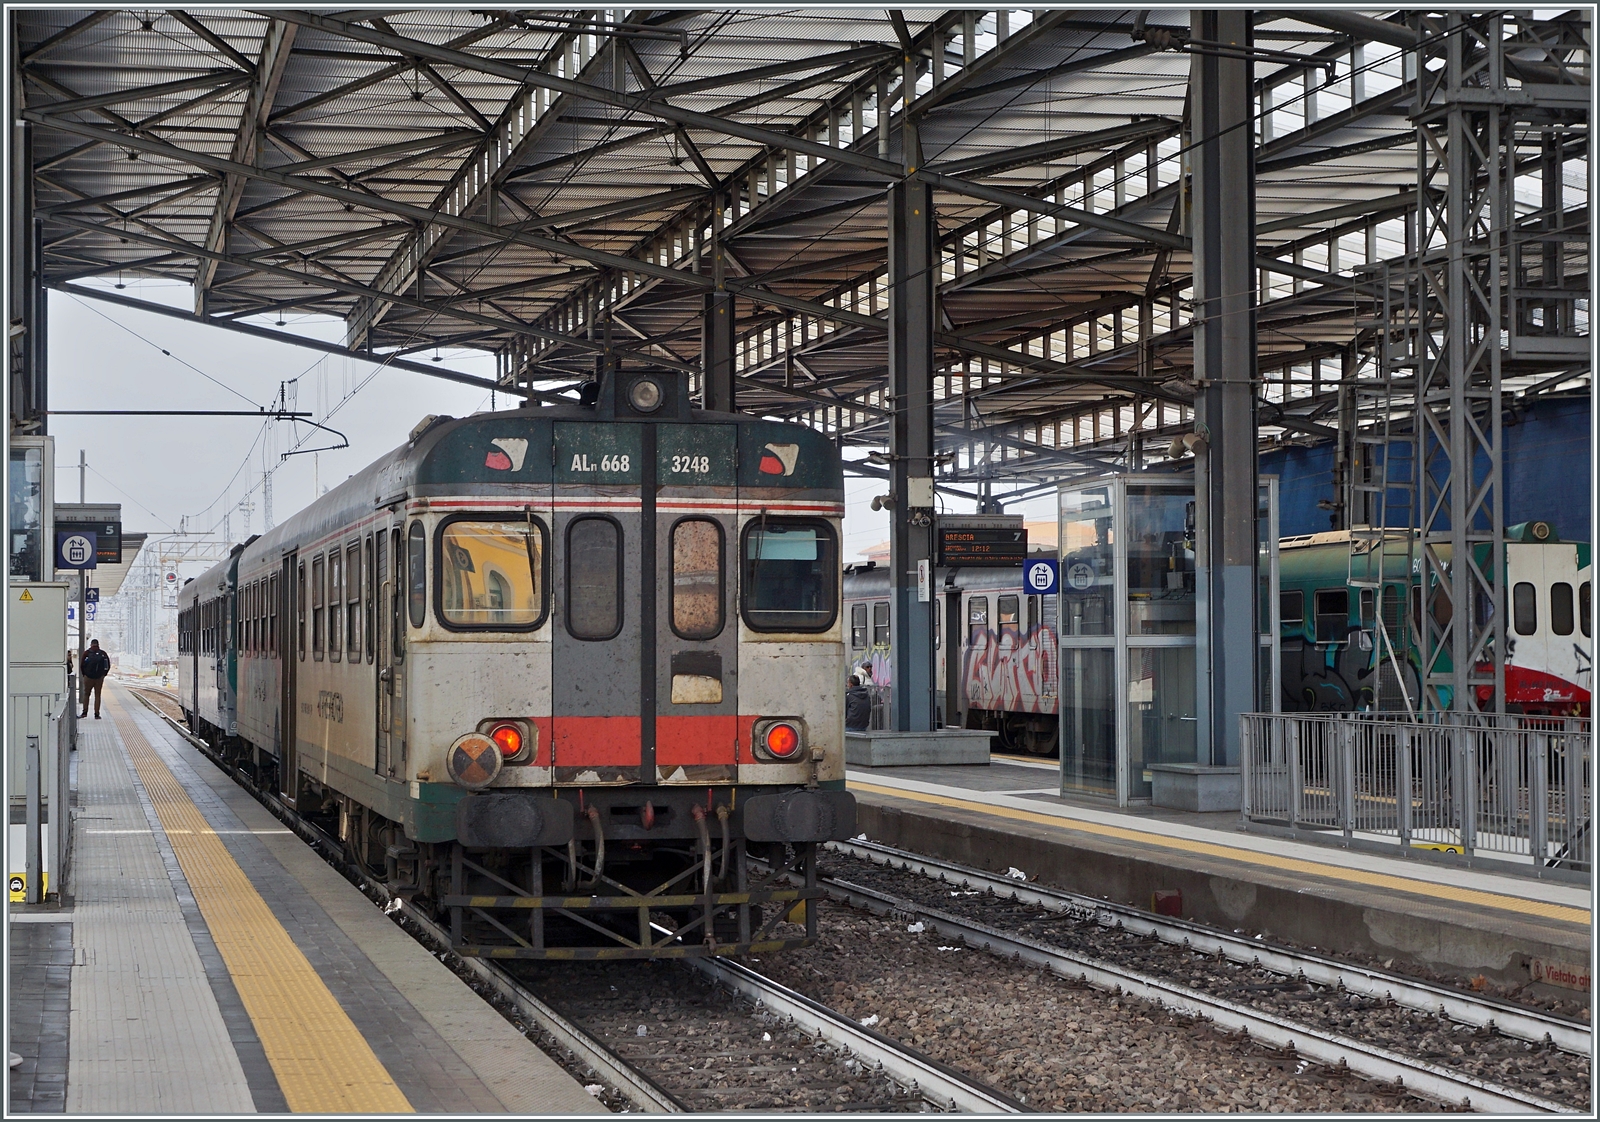 Der Trenord Aln 668 3248 und ein weiterer haben als Regionalzug 10821 von Brescia kommend, ihr Ziel Parma erreicht. Zwischen 1954 und 1981 wurden in zwölf Serien 787 Einheiten dieser Dieseltriebzüge von FIAT / Breda gebaut und waren im Nebenbahnverkehr in ganz Italien zu sehen, doch nun scheint die Einsatzzeit der Züge sich langsam dem Ende zuzuneigen. 

13. März 2023